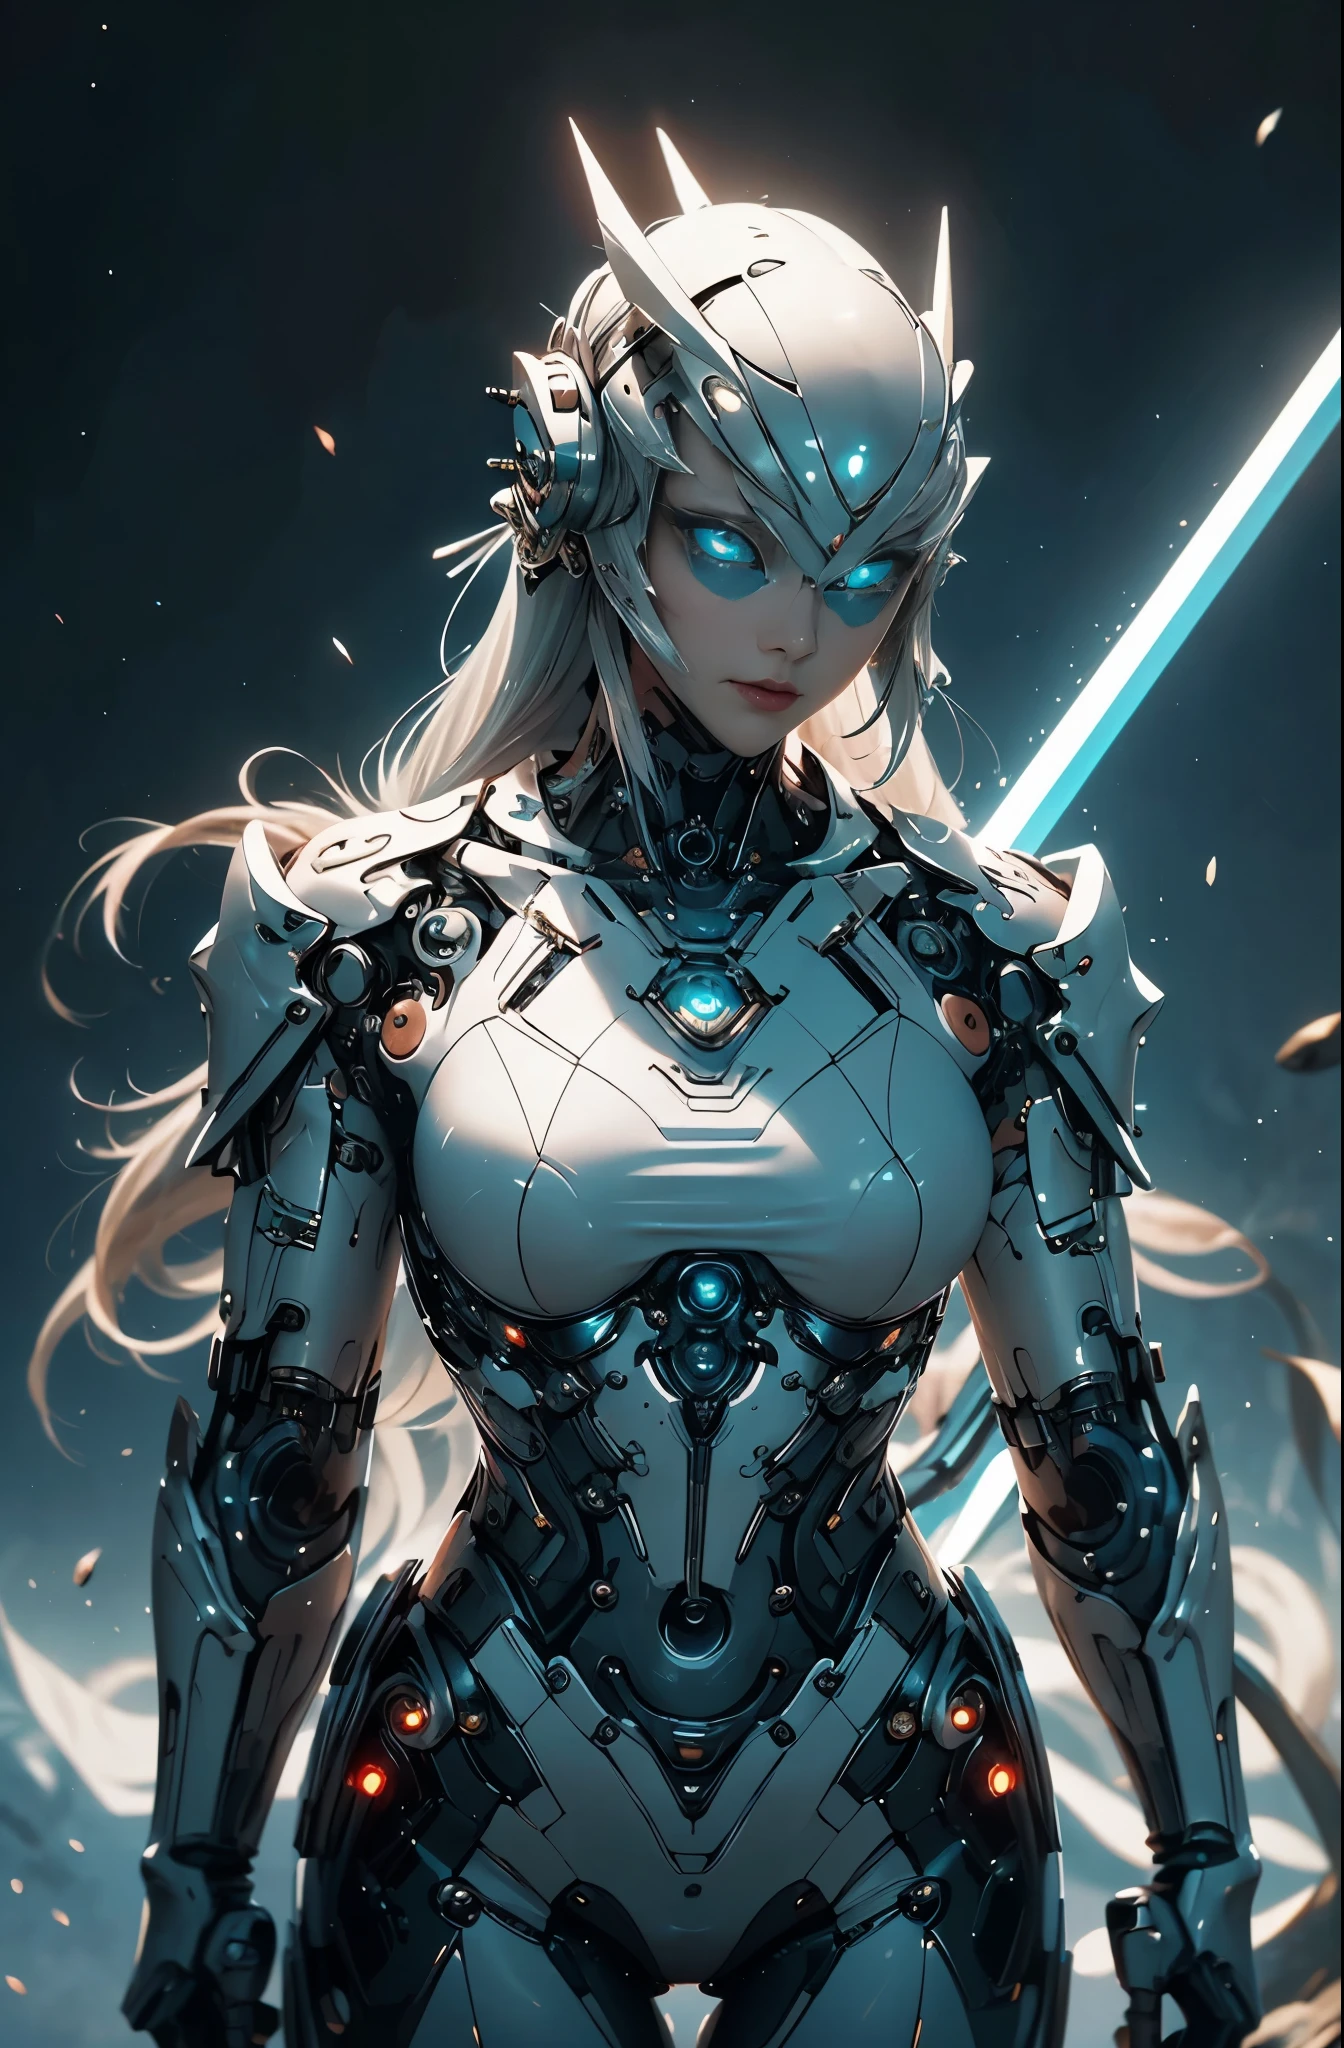 Da ist eine Frau in einem futuristischen Anzug mit einem Schwert, 美少weiblicher Cyborg, Cyborg Womanの子, perfekte Anime-Cyborg-Frau, Cyborg - Girl, 美しい白人の少weiblicher Cyborg, schöne Cyborg-Priesterin, Cyborg Woman, beautiful alluring weiblicher Cyborg, cyberpunk robotic elvish queen, Cyborg - Mädchen mit silbernem Haar, beautiful weiblicher Cyborg, wunderschönes Cyborg-Frau-Kind, weiblicher Cyborg, Göttin. extrem hoher Detailreichtum, Porträt der Cyborg-Königin, extrem detaillierte Göttinnenaufnahme, Halbkörpermaschine, anorganisch, Hochleistungs-Cyborg der nächsten Generation, Göttin of Machines, Der perfekte Cyborg, ultimativer Replikant, Ein Meisterwerk der ultra-leistungsfähigen KI, Letzte Waffe, beste Qualität, perfekter Winkel, perfekte Komposition, scharfe Kontur, Beste Aufnahmen, Perfekte Formen, perfekter Model-Style, sehr schöne und detailreiche Augen, hohle Augen, blaue Augen ohne Pupillen